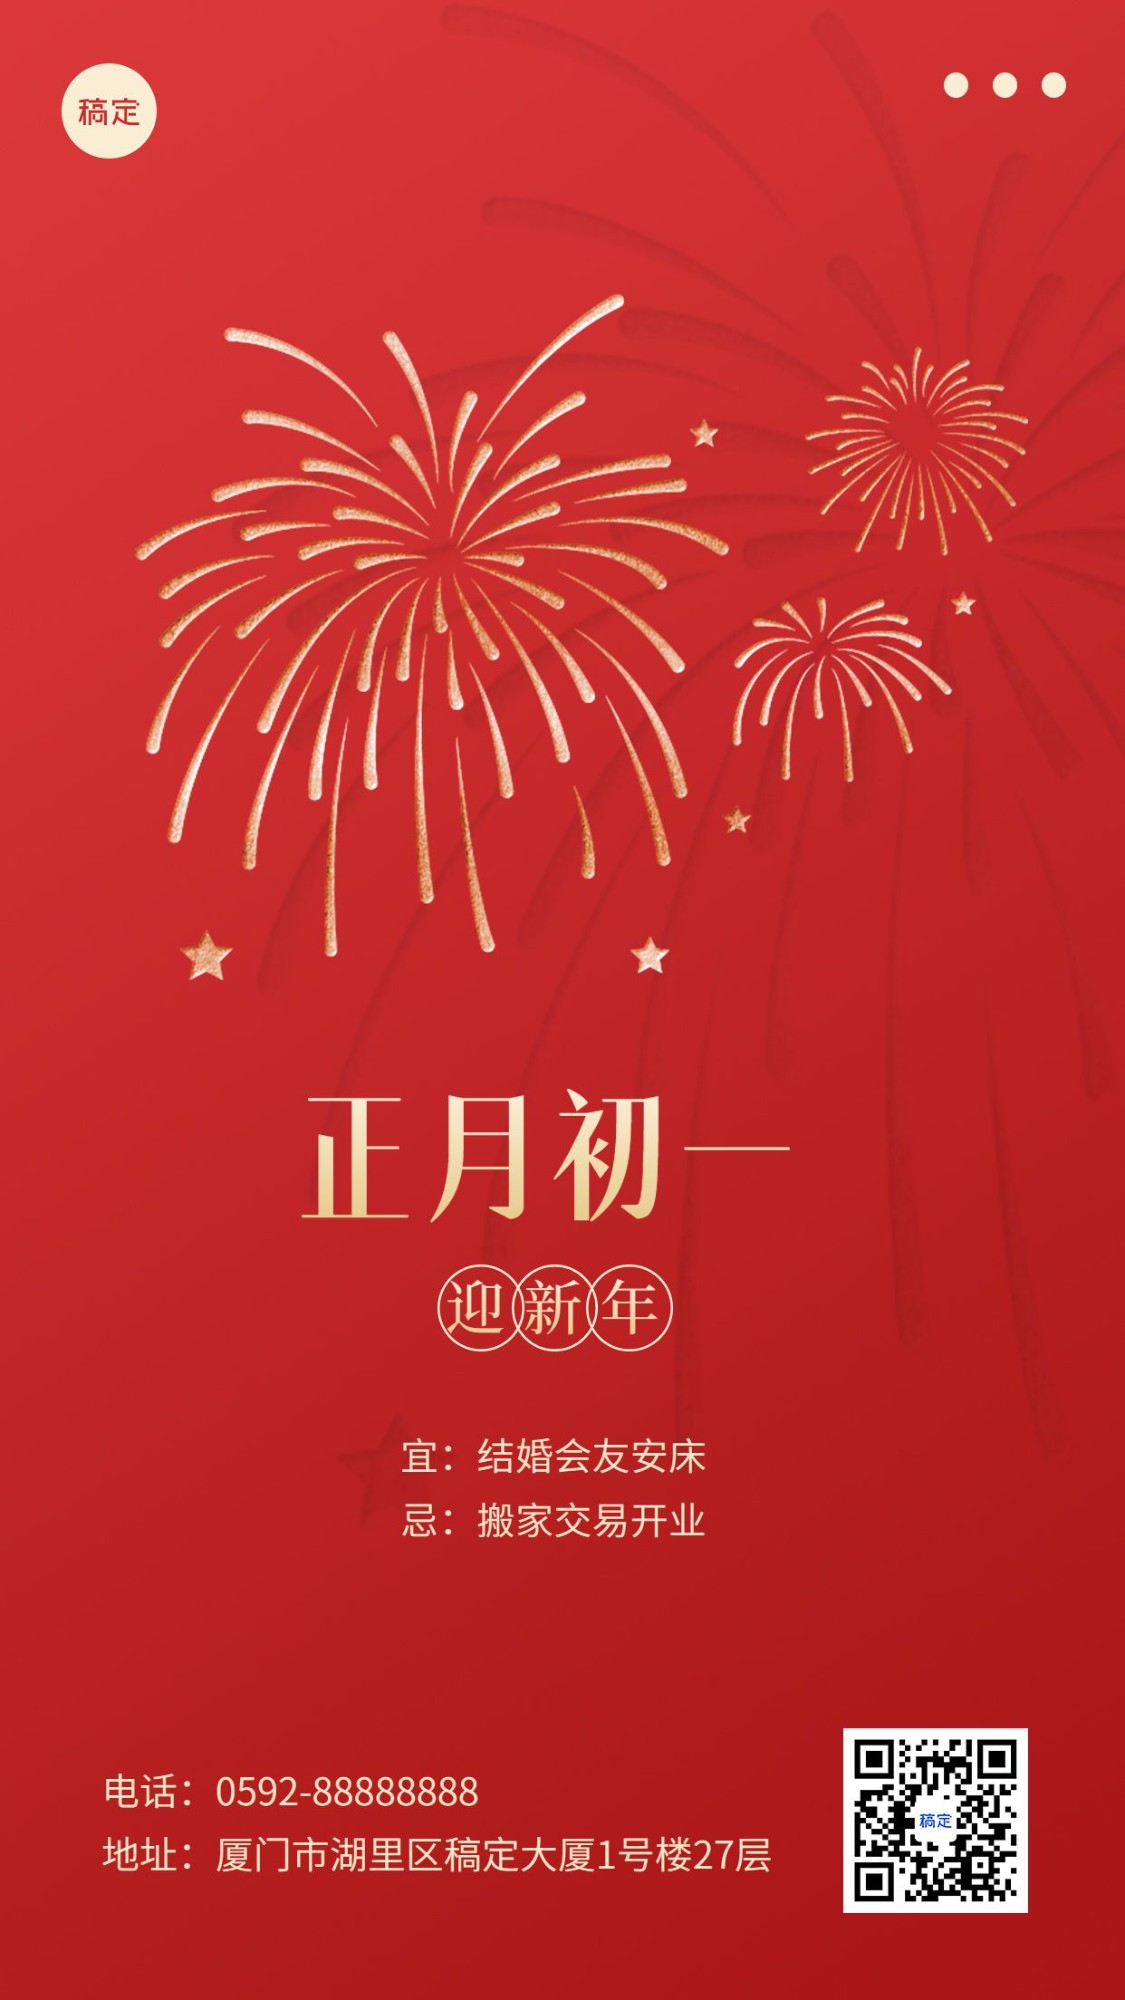 春节新年祝福正月初一简约排版套系手机海报